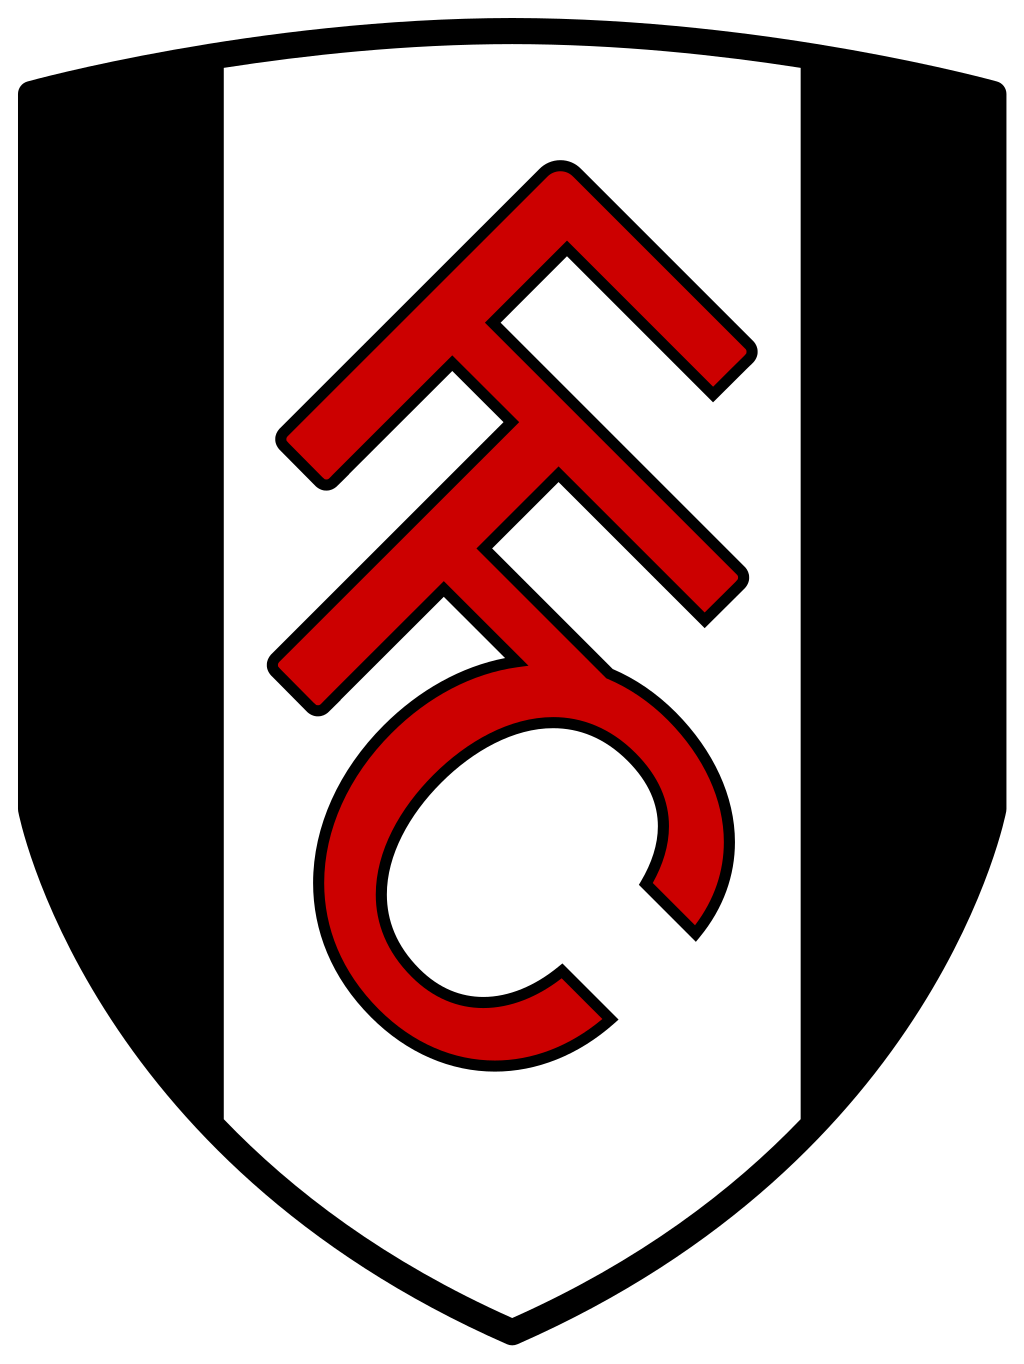 Logo Fulham F.C.